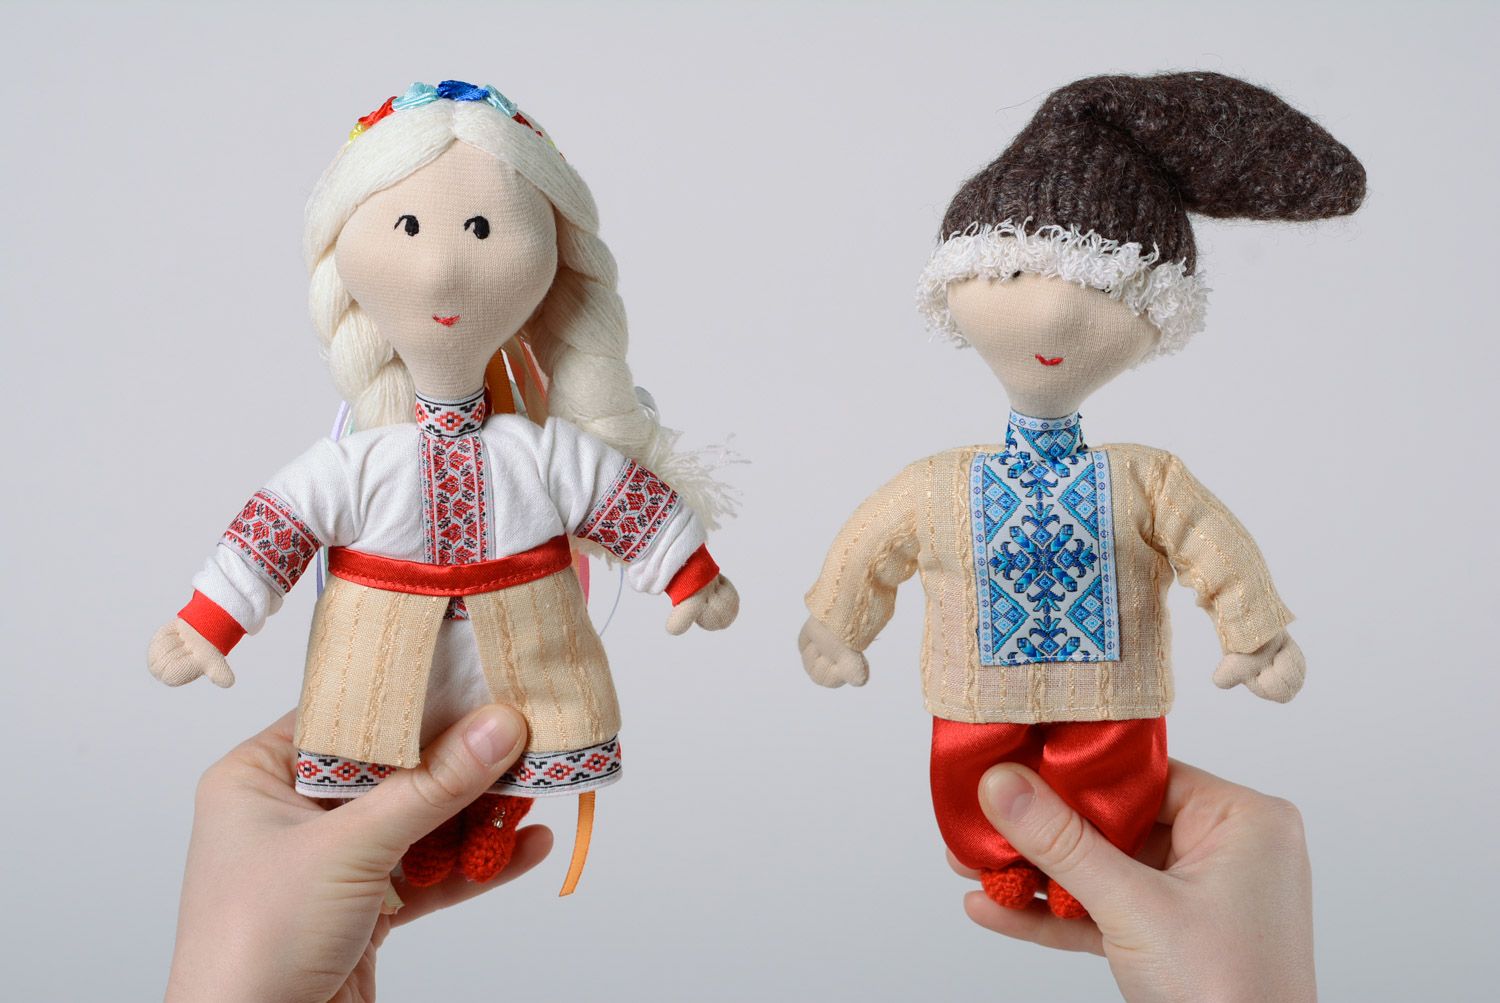 Мягкие игрушки ручной работы в украинских нарядах из натуральных тканей handmade 2 шт фото 1